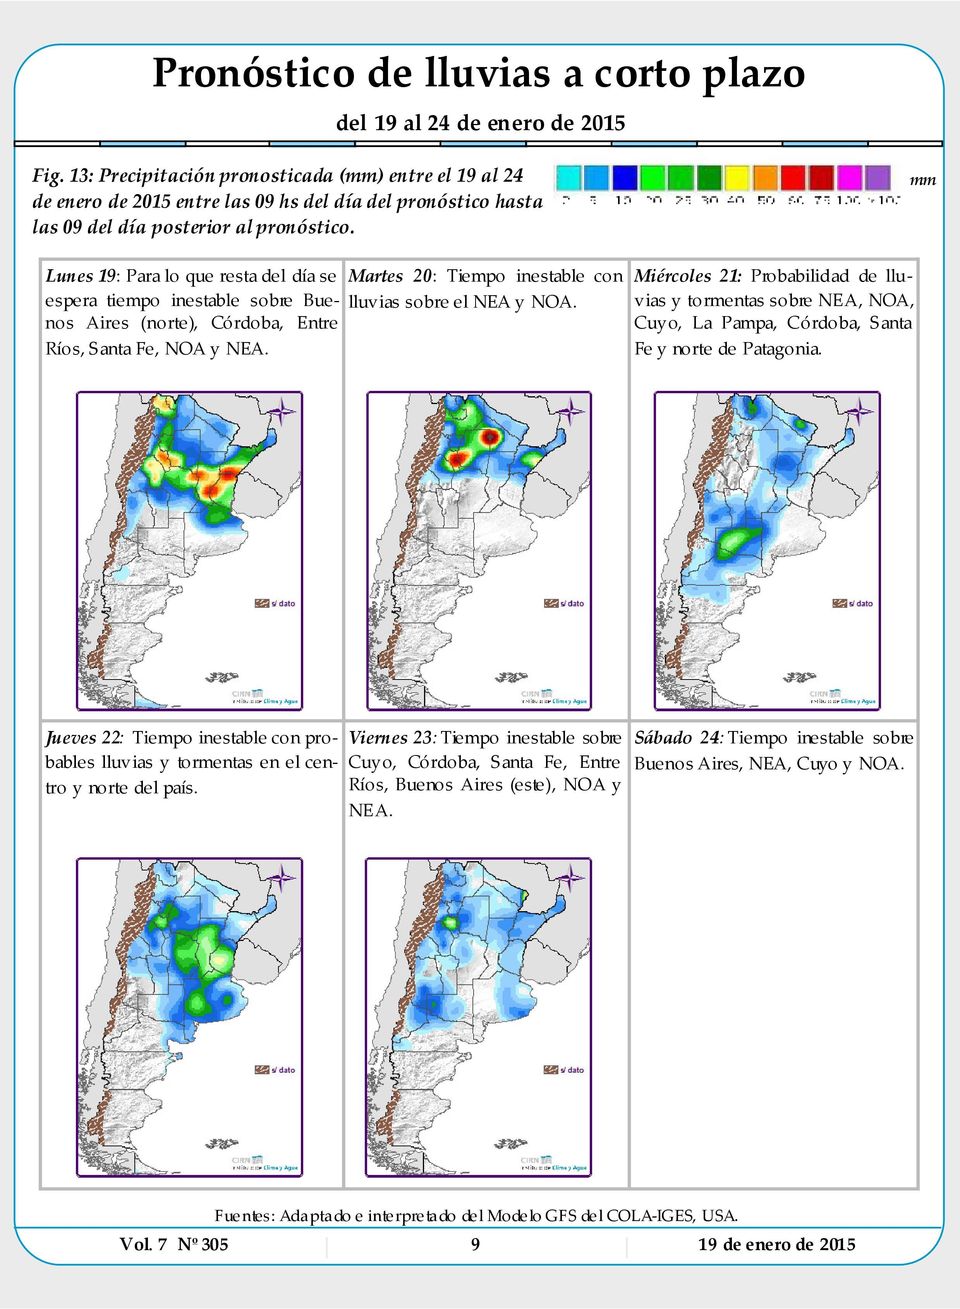 mm Lunes 19: Para lo que resta del día se espera tiempo inestable sobre Buenos Aires (norte), Córdoba, Entre Ríos, Santa Fe, NOA y NEA. Martes 20: Tiempo inestable con lluvias sobre el NEA y NOA.